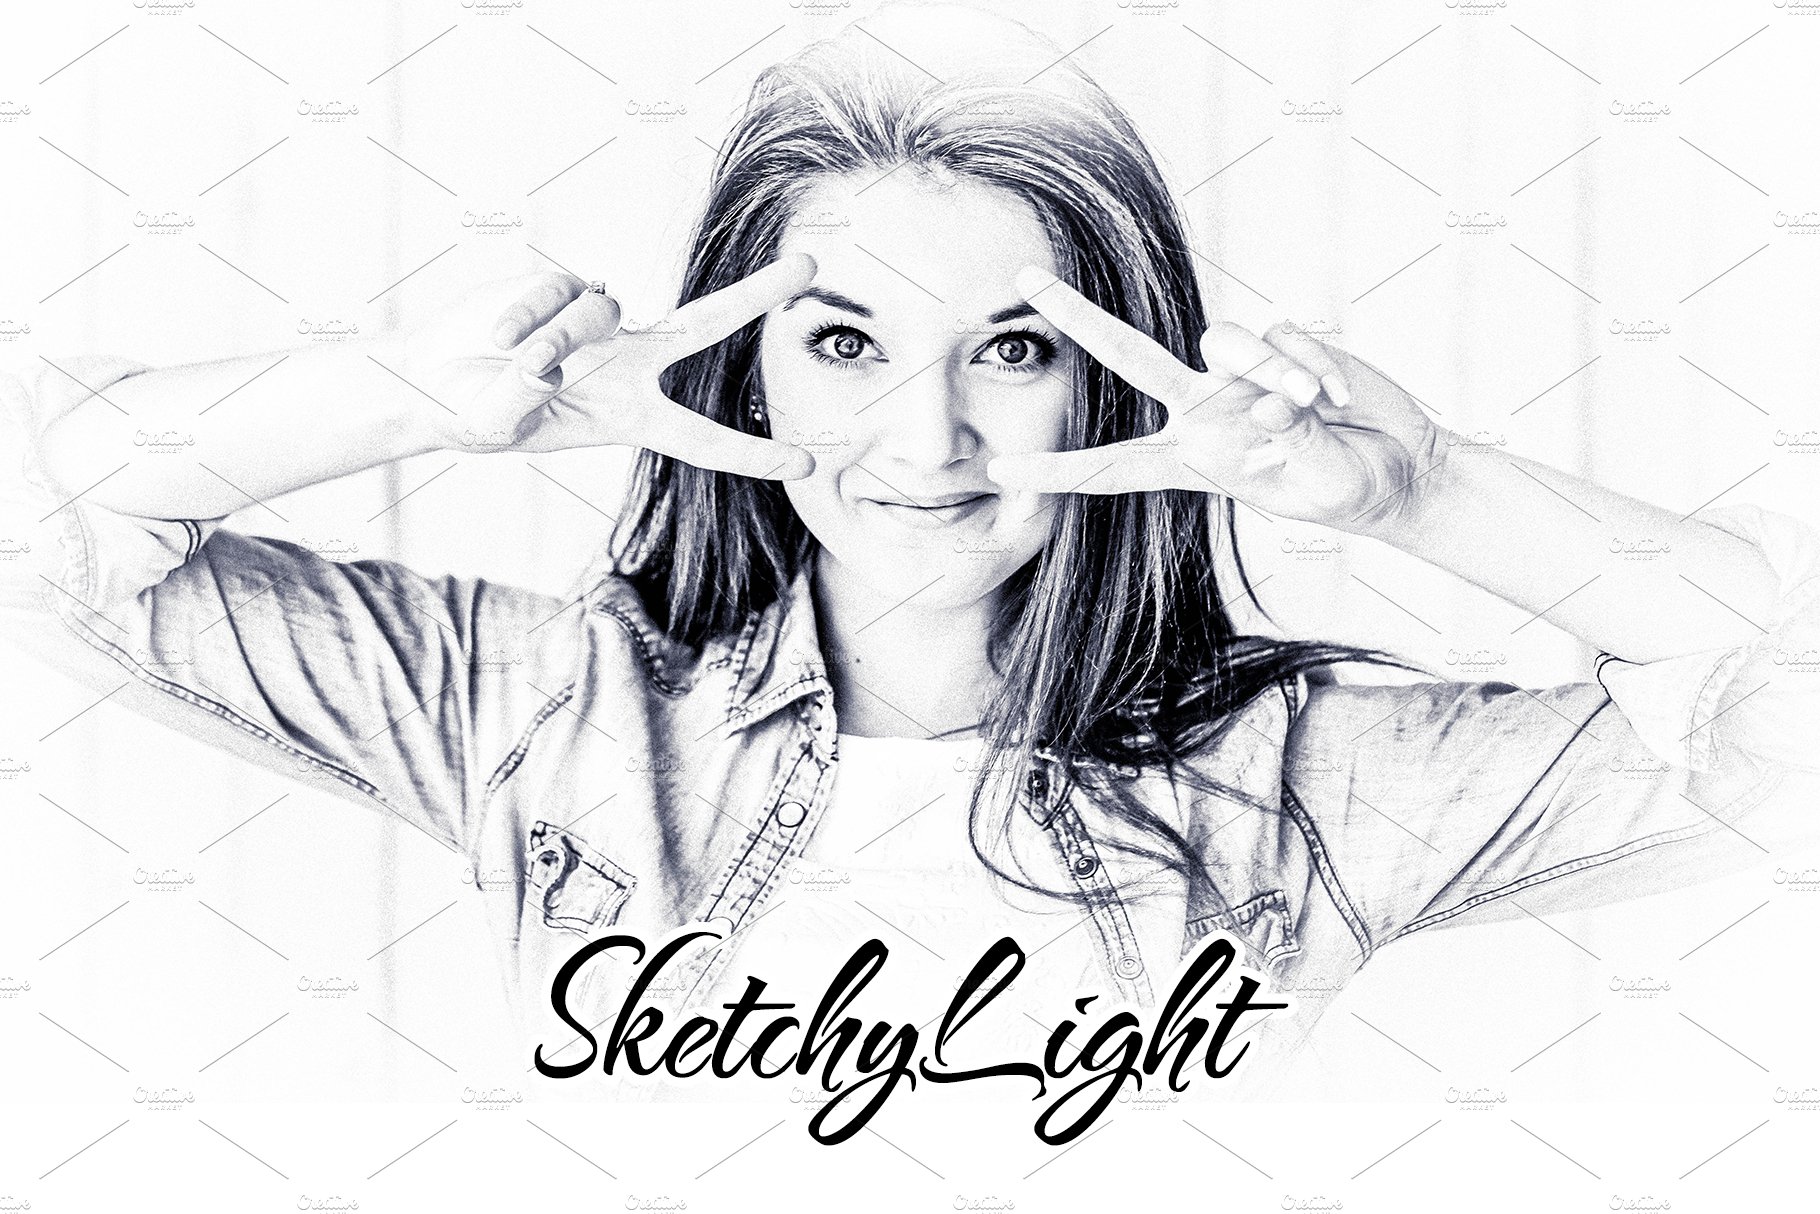 SketchyLight - 30 Lightroom Presetscover image.